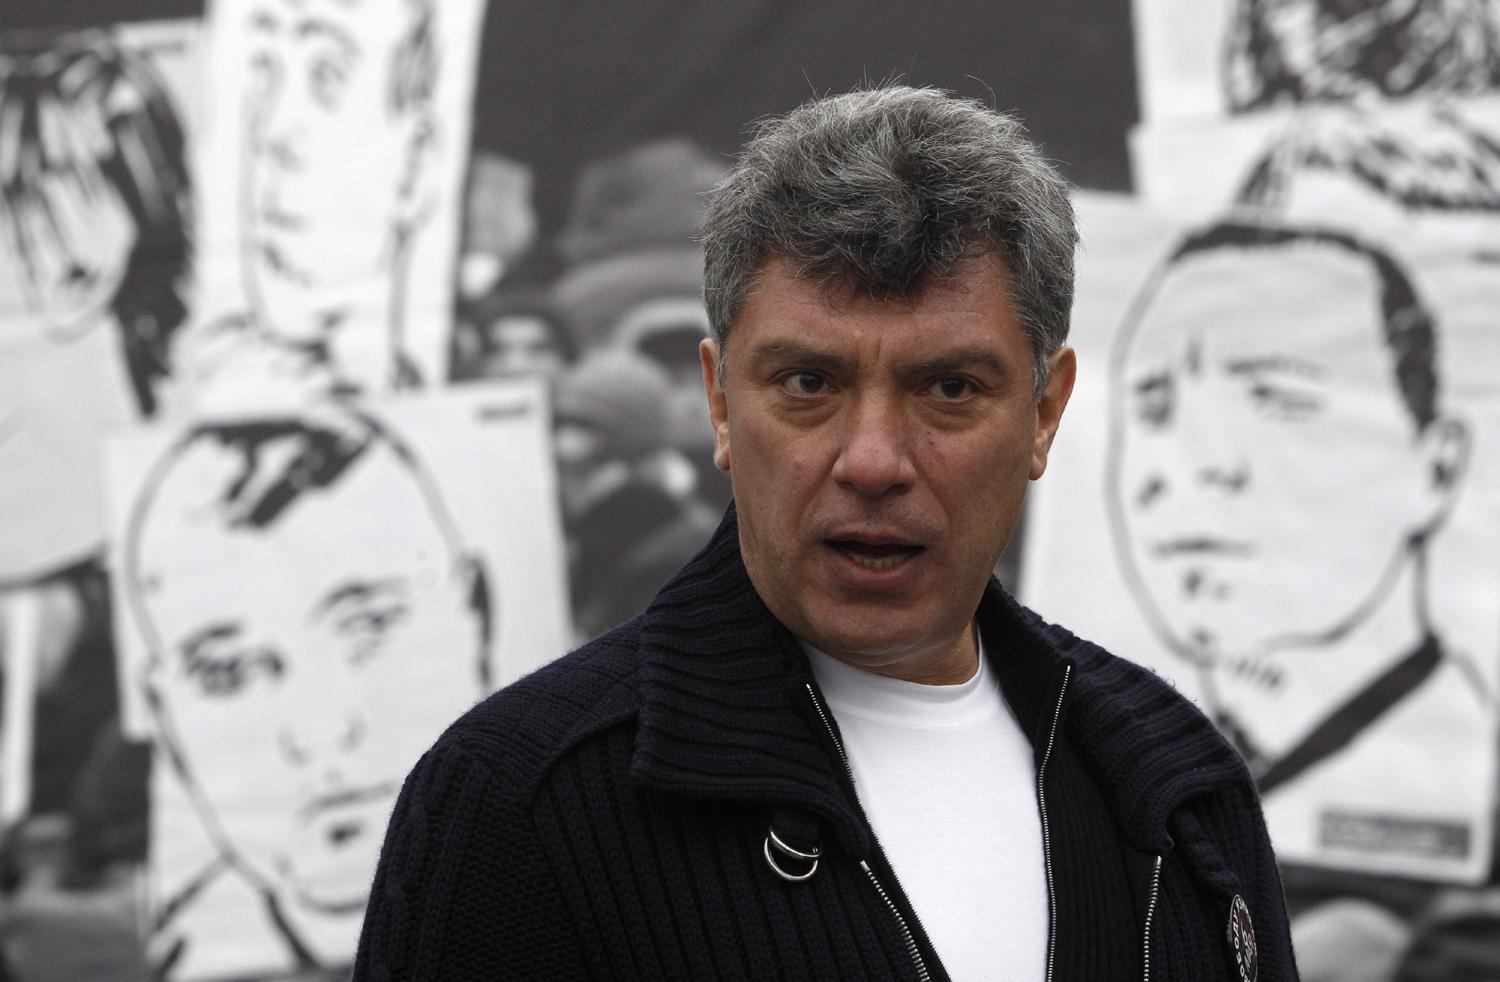 Nyemcov egy tavalyelőtti tüntetésen. Néha kapott fenyegetéseket, de nem tulajdonított túlzott jelentőséget nekik